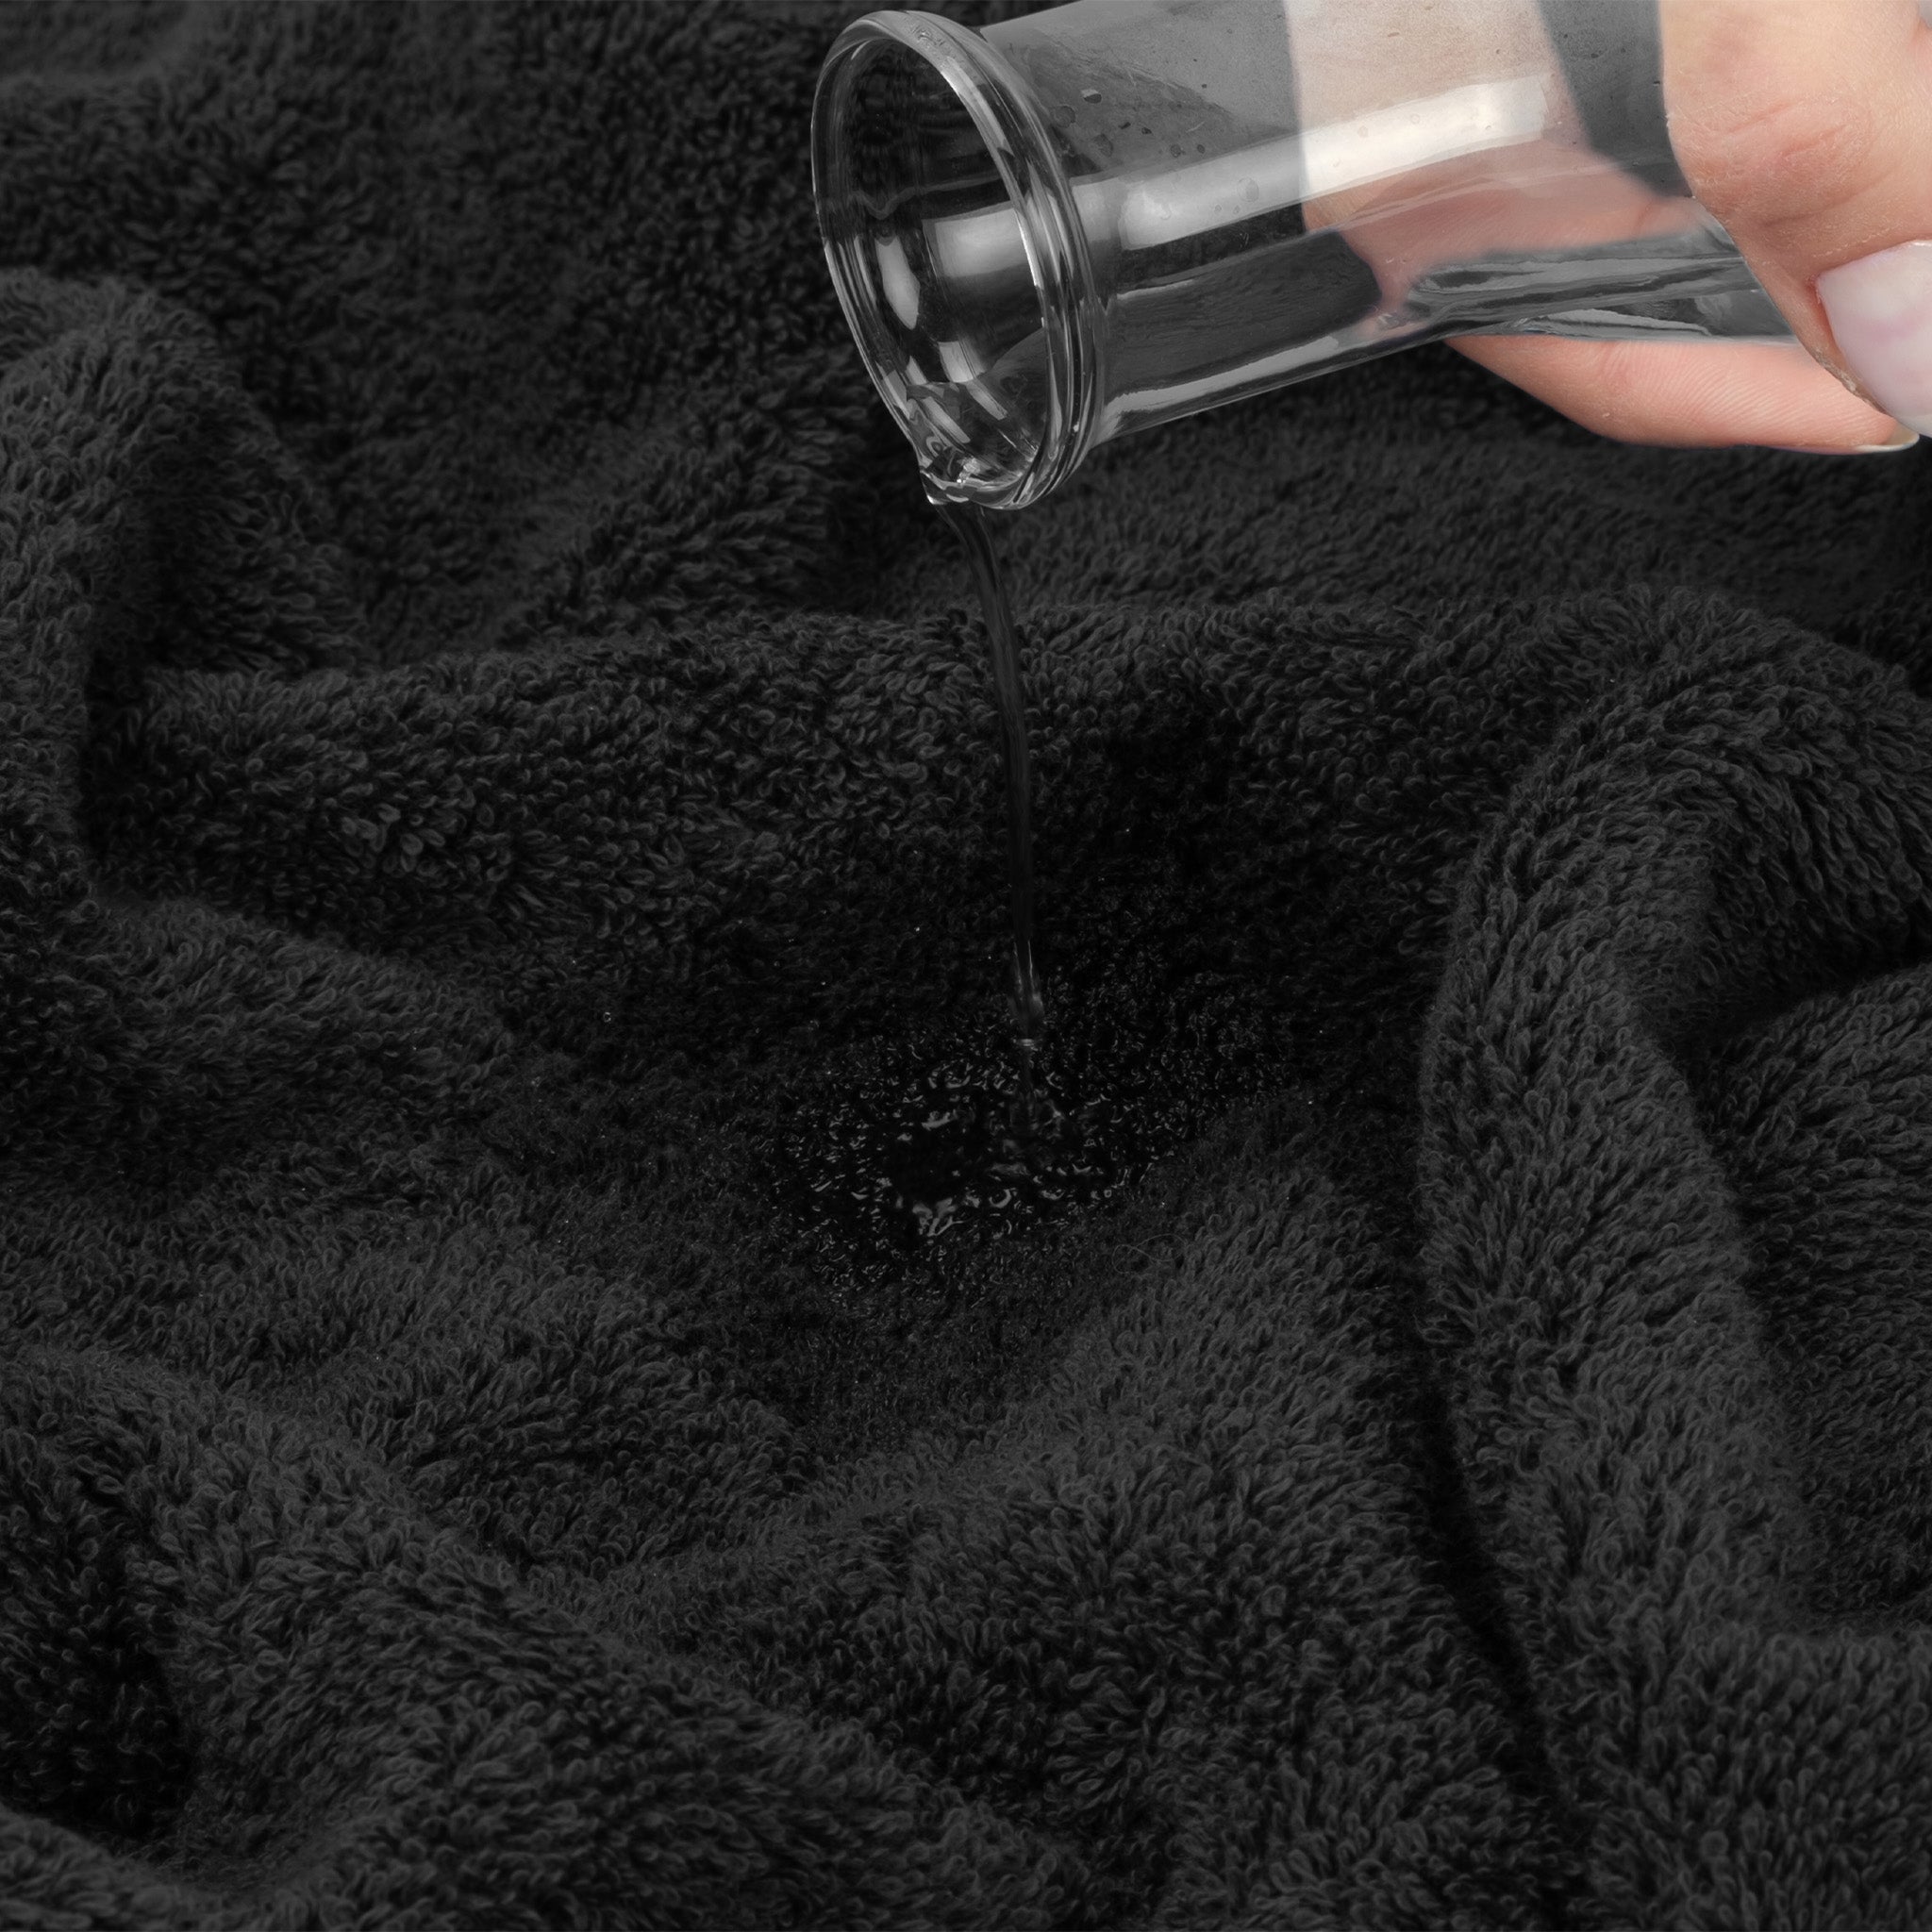 American Soft Linen 100% Turkish Cotton 4 Pack Bath Towel Set Wholesale black-6